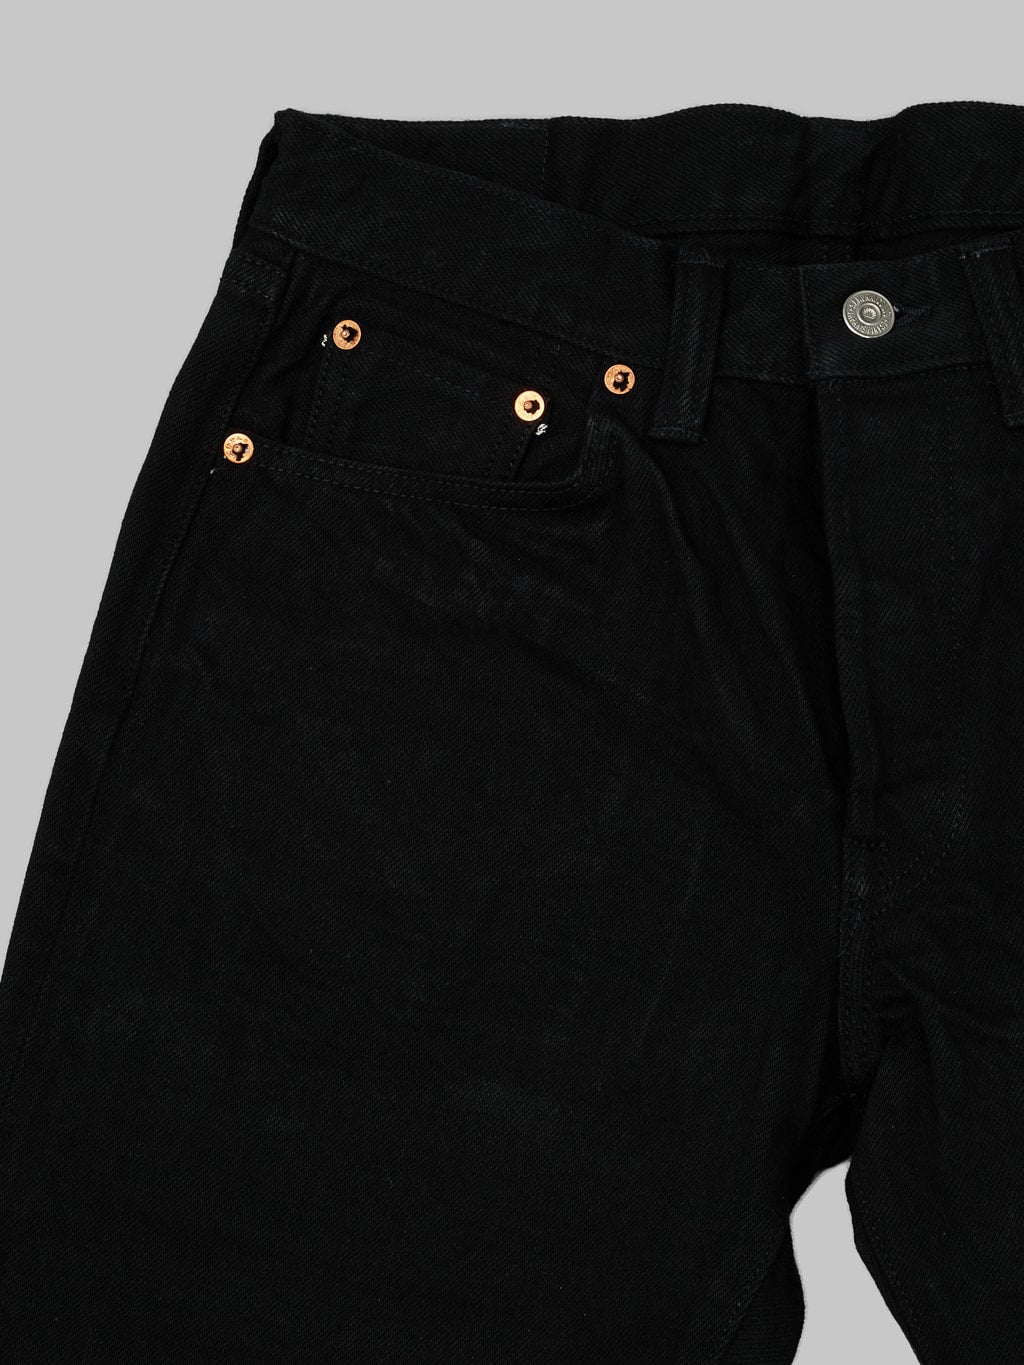 Samurai Jeans Color Fast Black x Black slim straight Jeans details